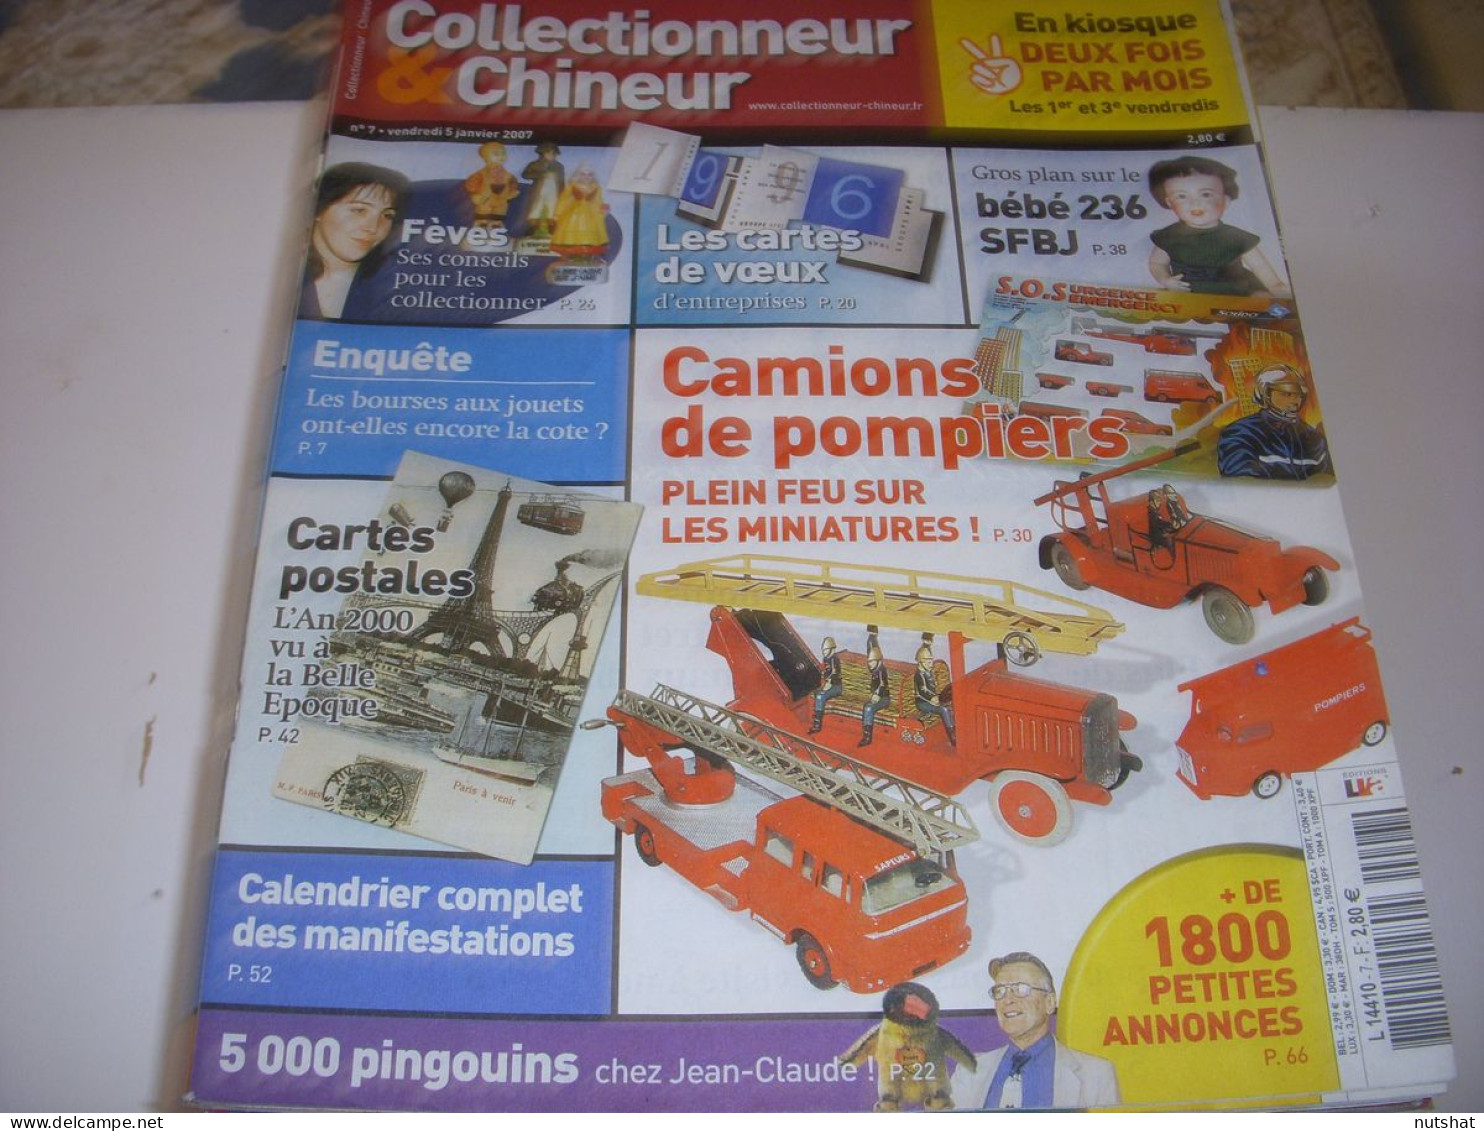 COLLECTIONNEUR CHINEUR 007 05.01.2007 BOURSE AUX JOUETS FAIENCES MACONNIQUES - Brocantes & Collections